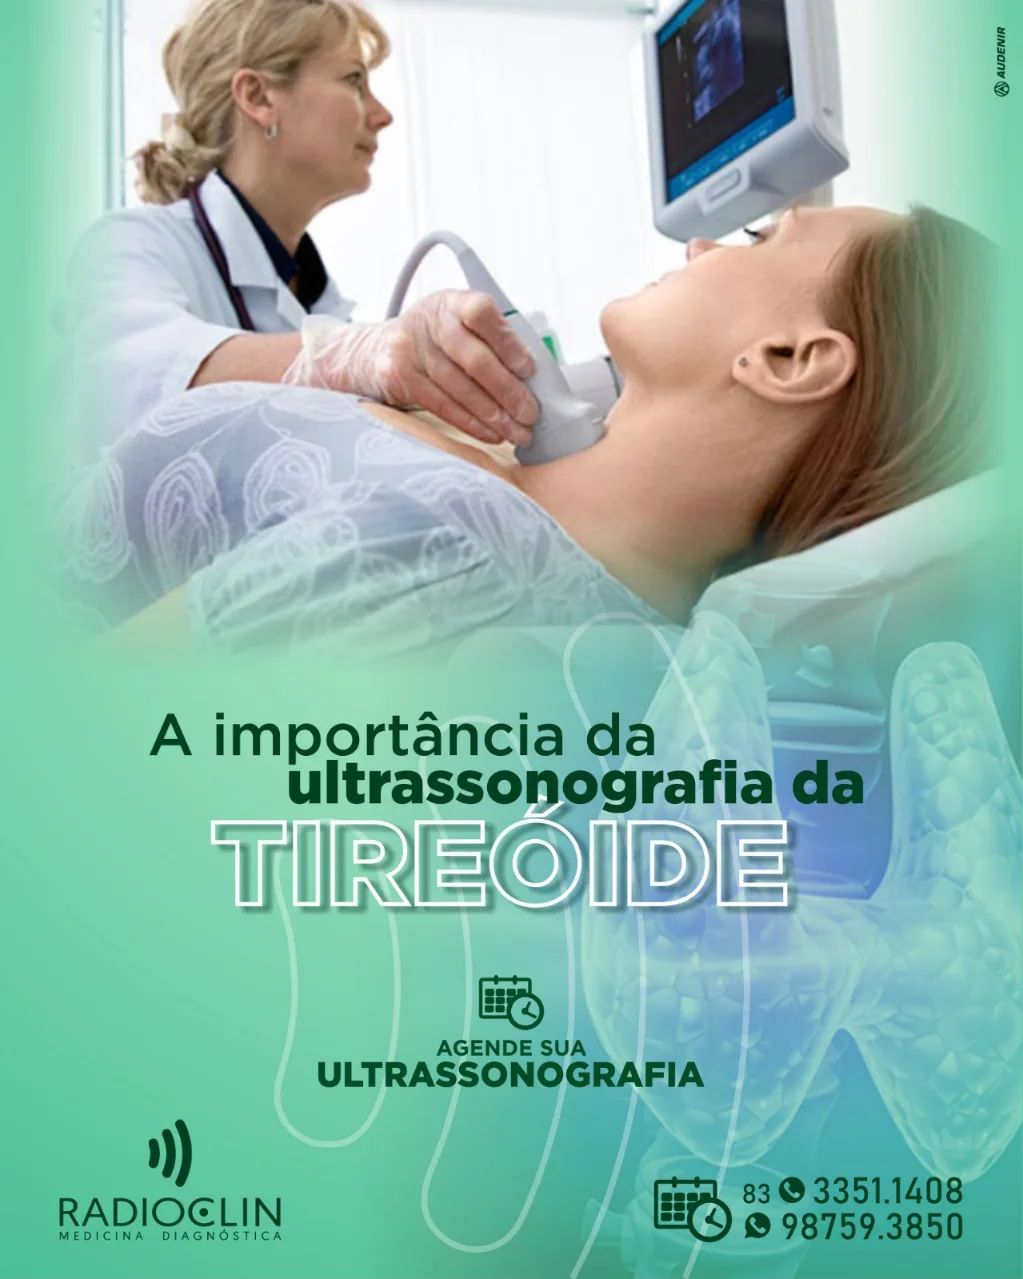 408236396_1311618732878076_2559840237678189821_n.webp-1 Avanços Tecnológicos na RADIOCLIN de Monteiro Elevam o Padrão de Diagnósticos Médicos